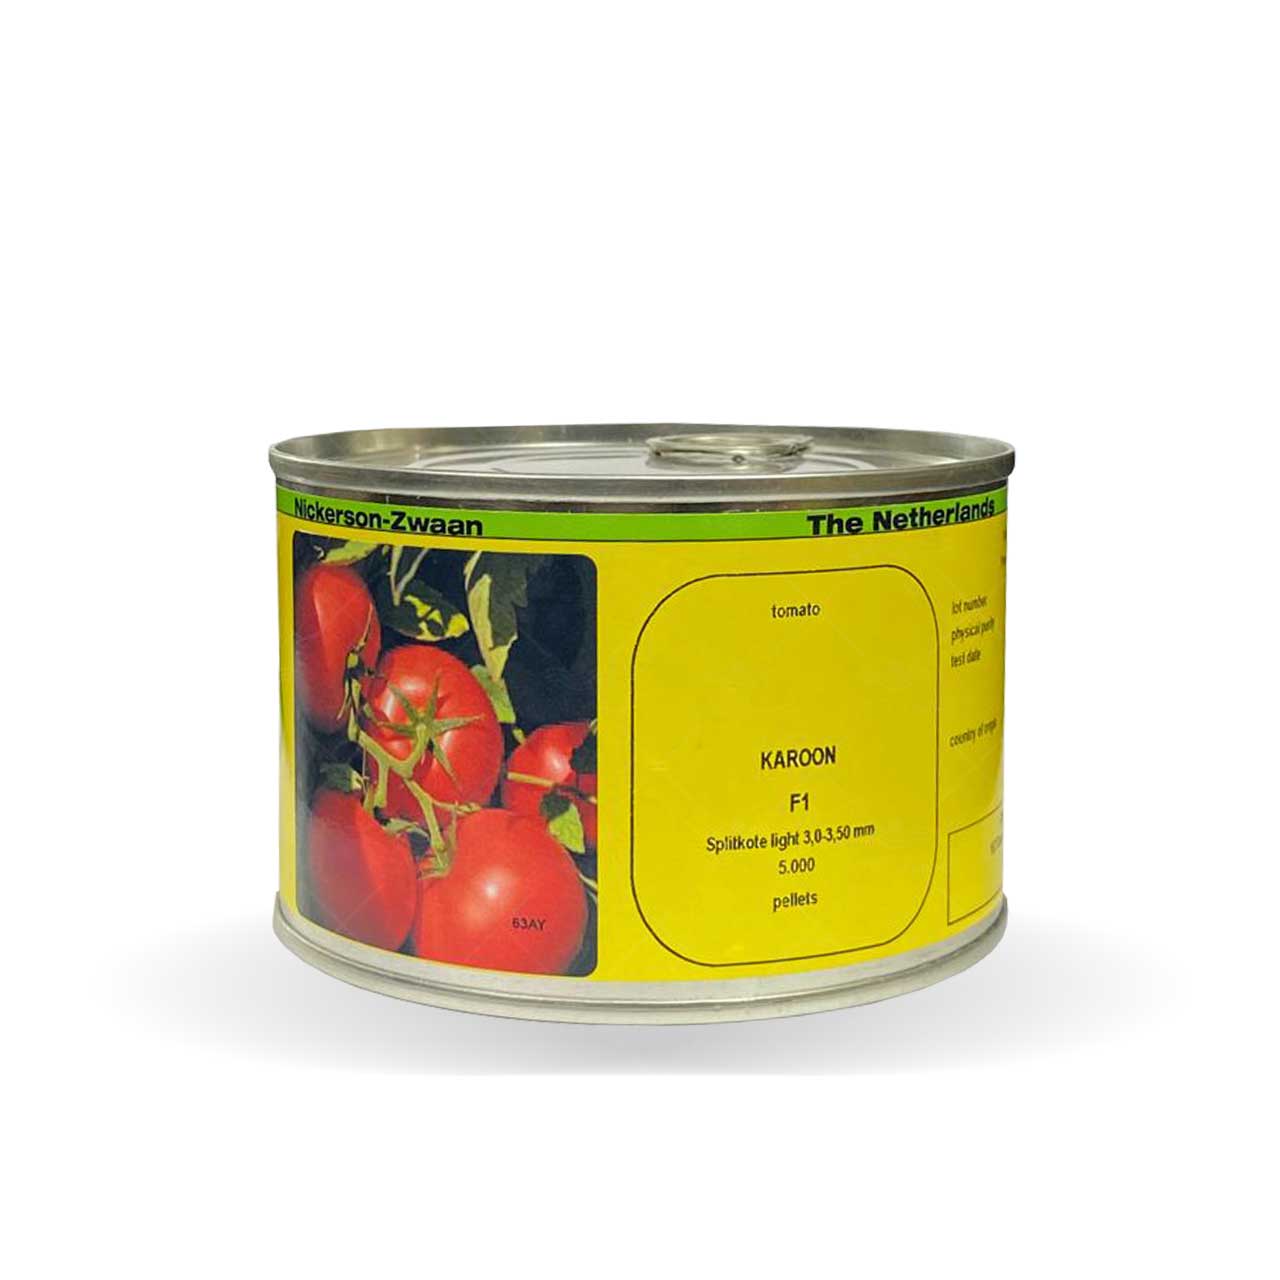 بذر گوجه فرنگی گرد کارون هیبرید F1 از شرکت نیکرسون هلند 5000 عددی